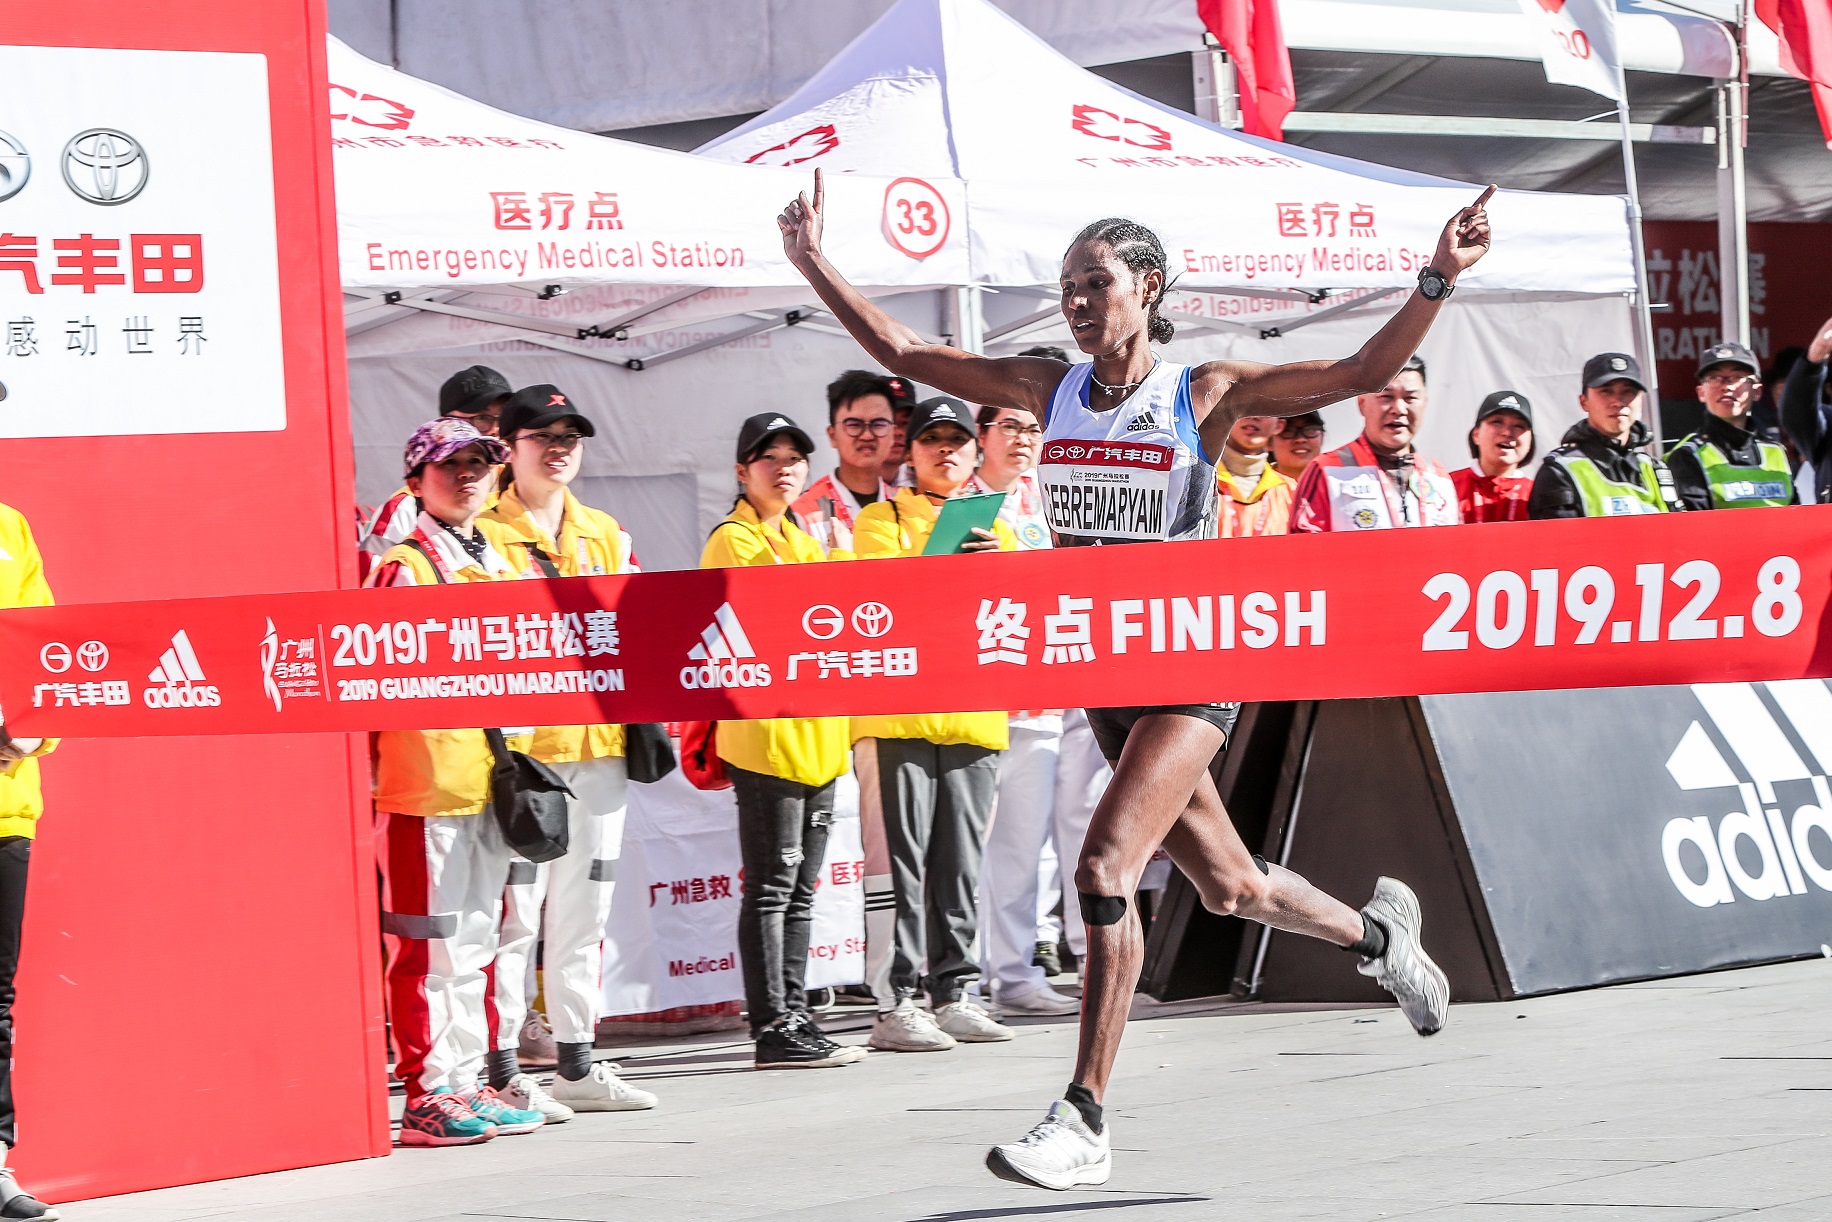 2019广州马拉松赛成功举办，佳绩频出